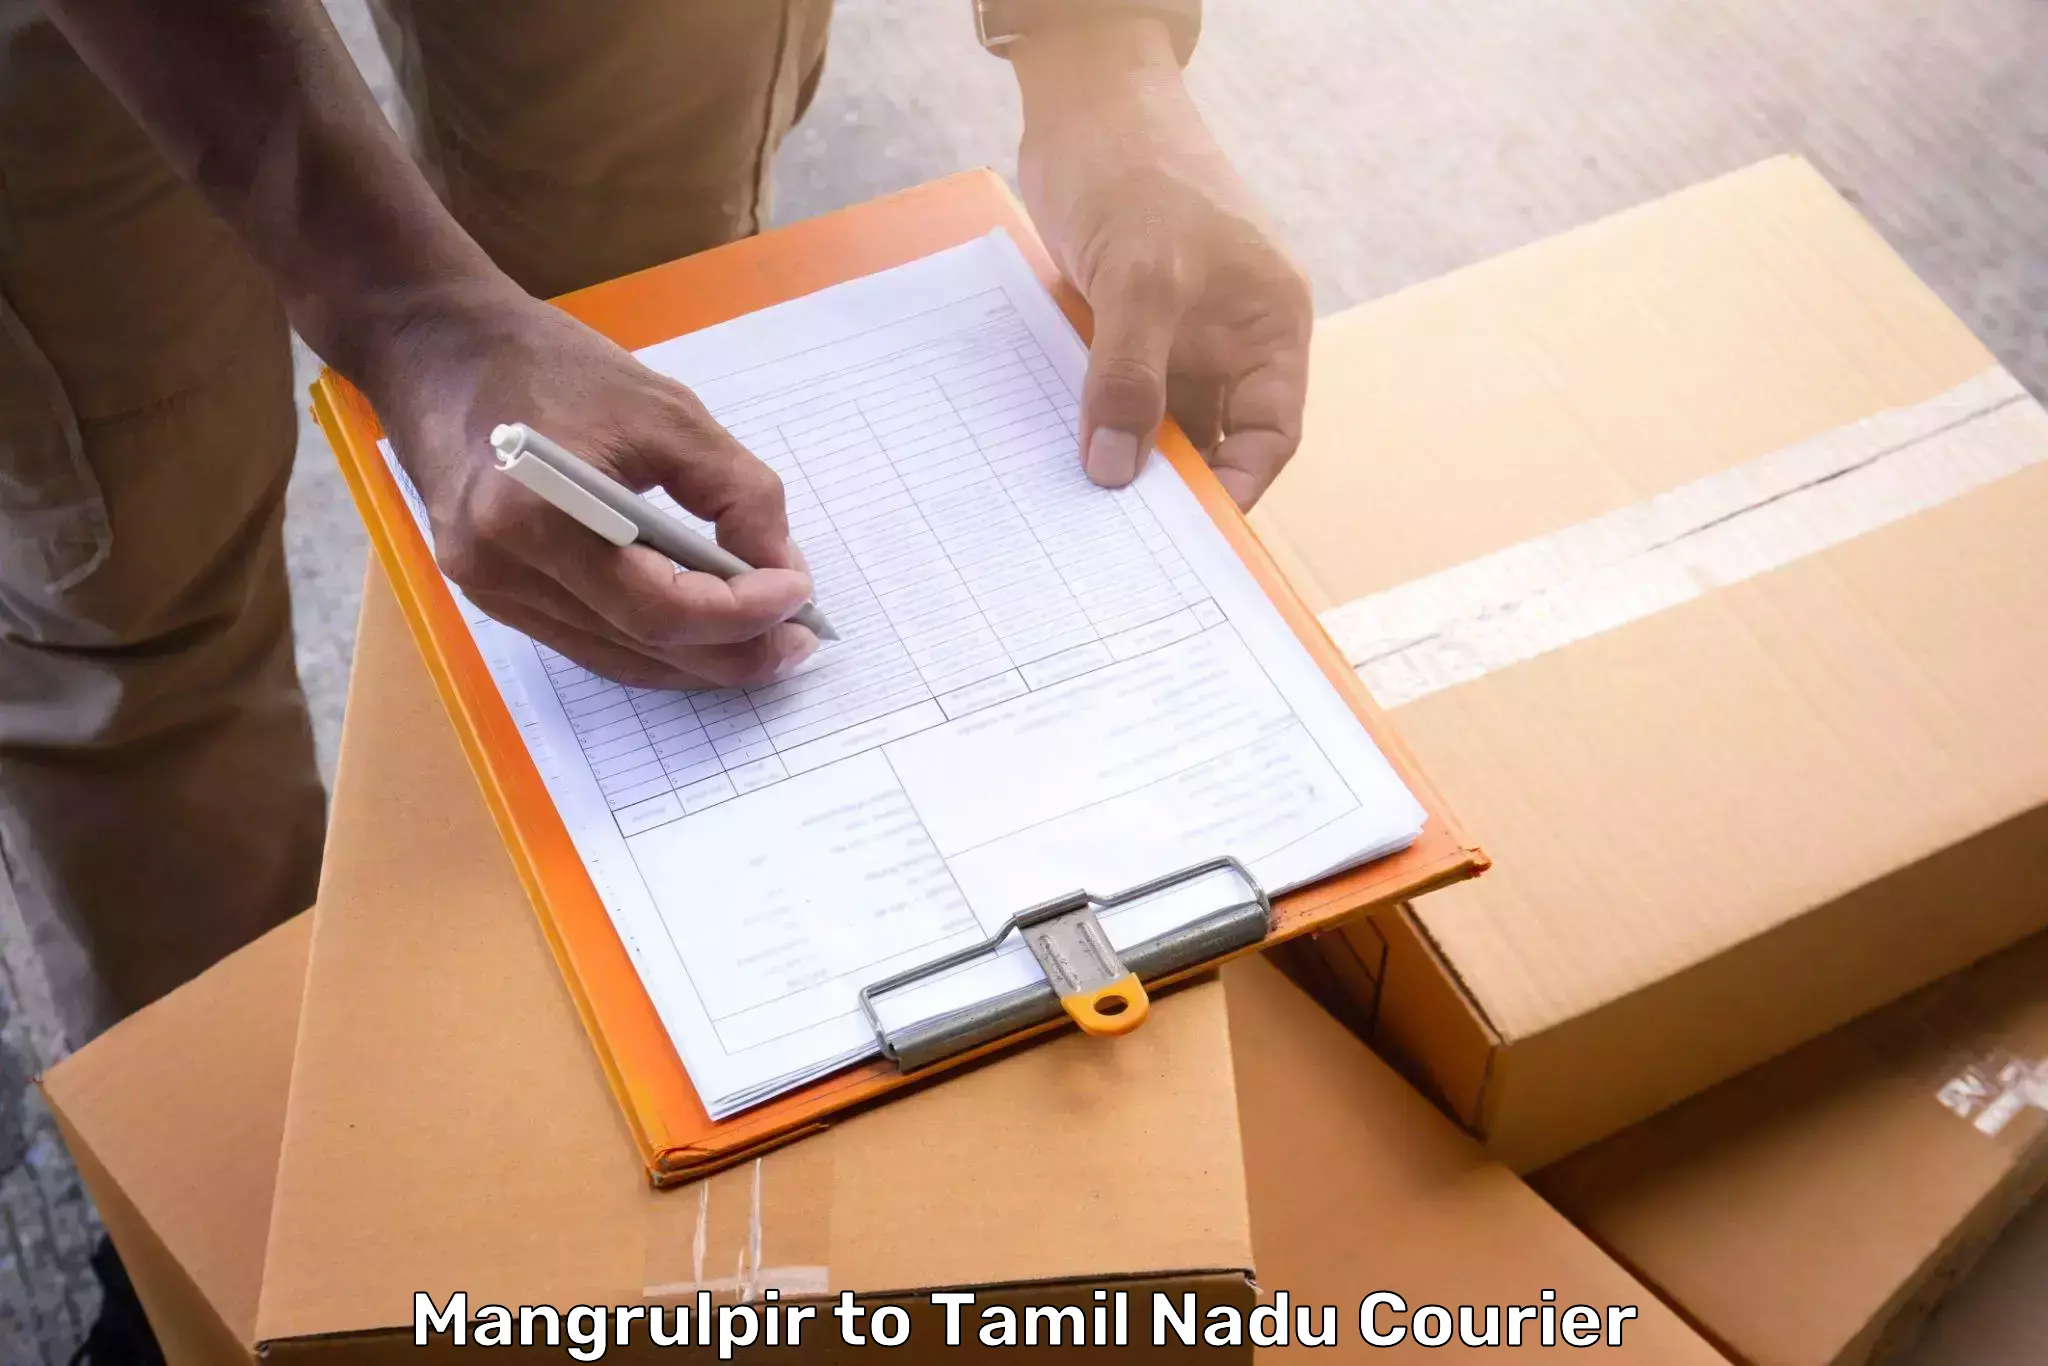 Customized luggage delivery Mangrulpir to Tiruturaipundi